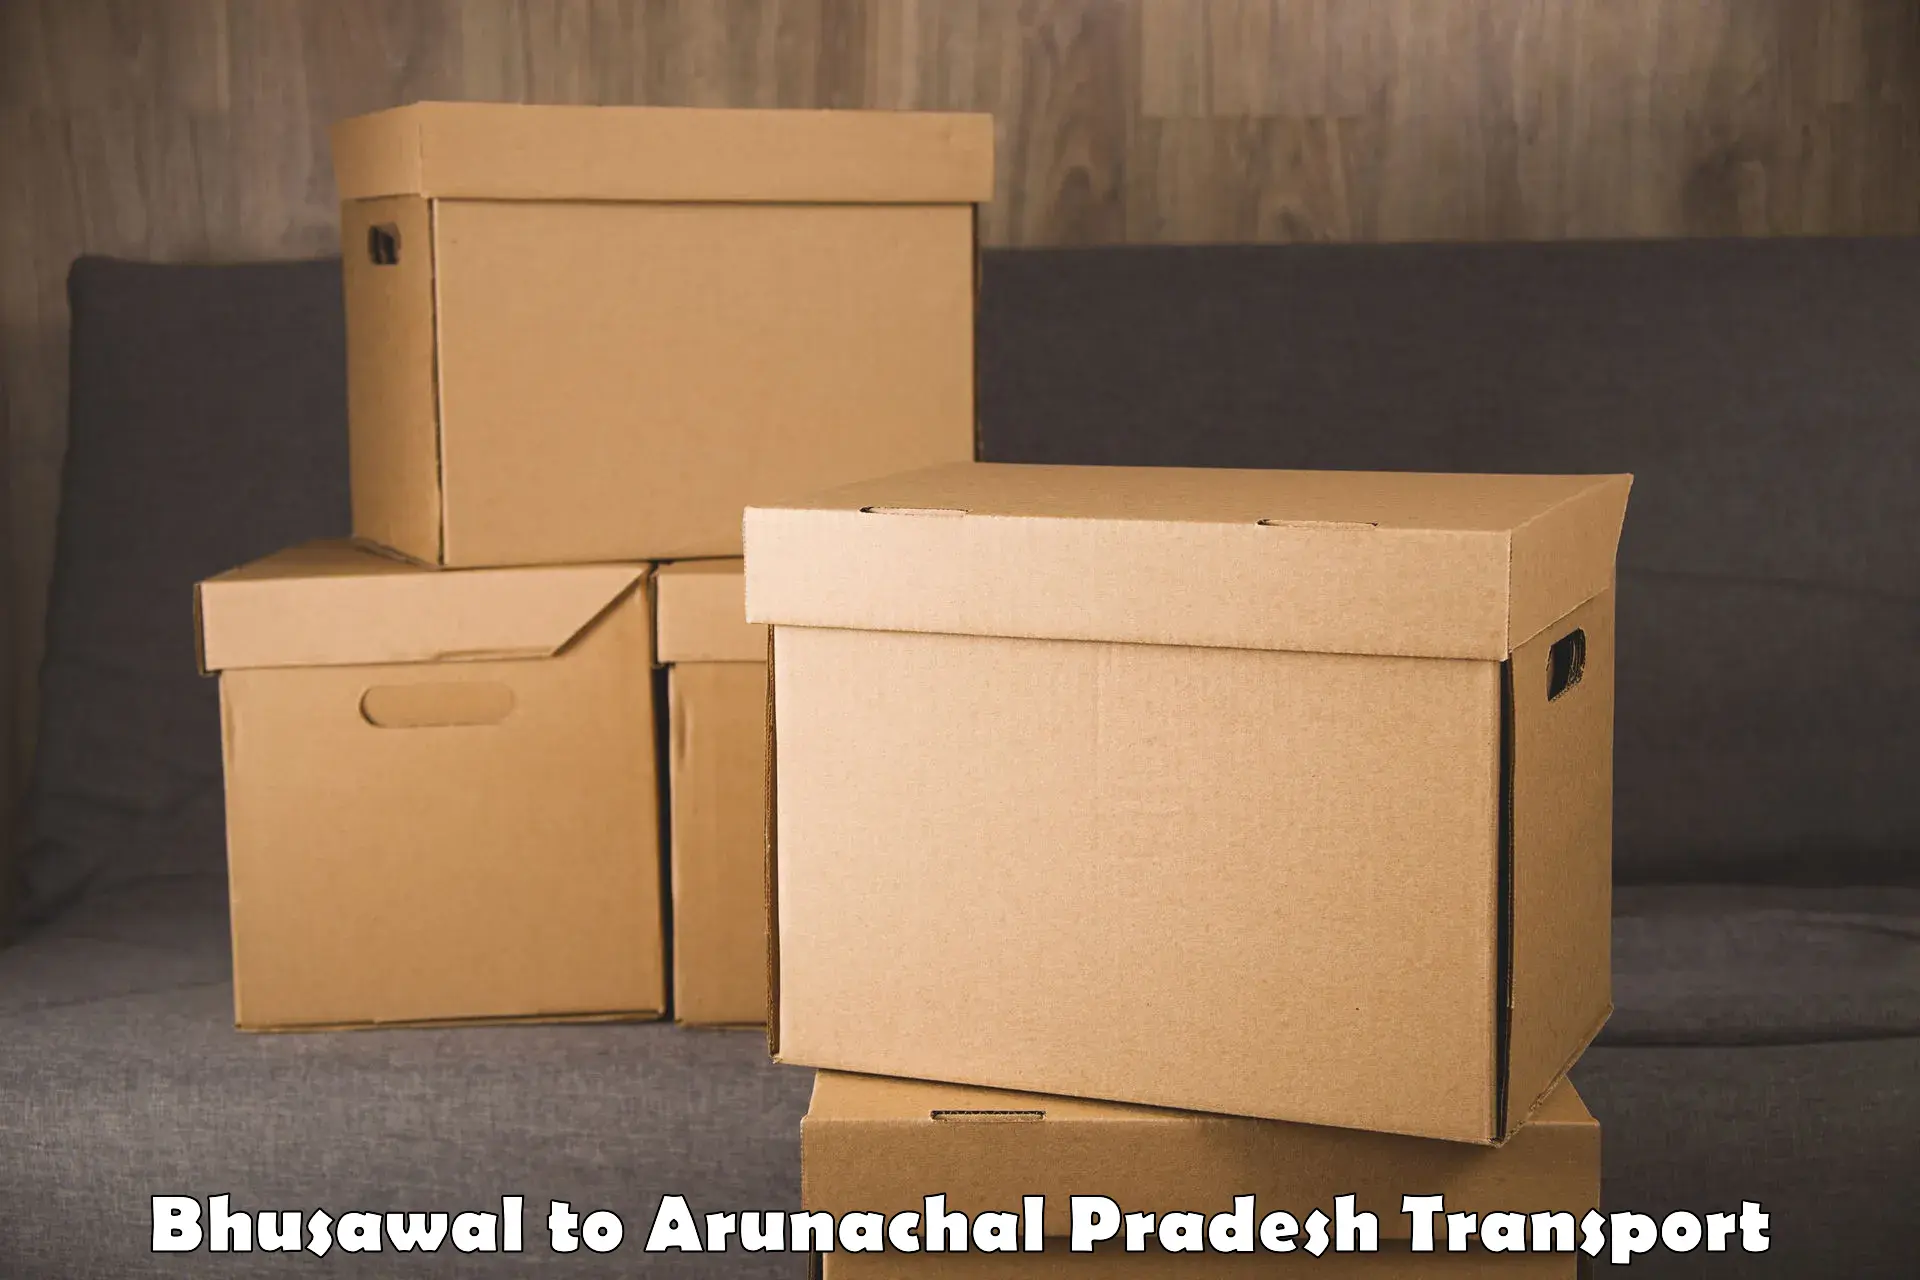 Cargo train transport services Bhusawal to Arunachal Pradesh